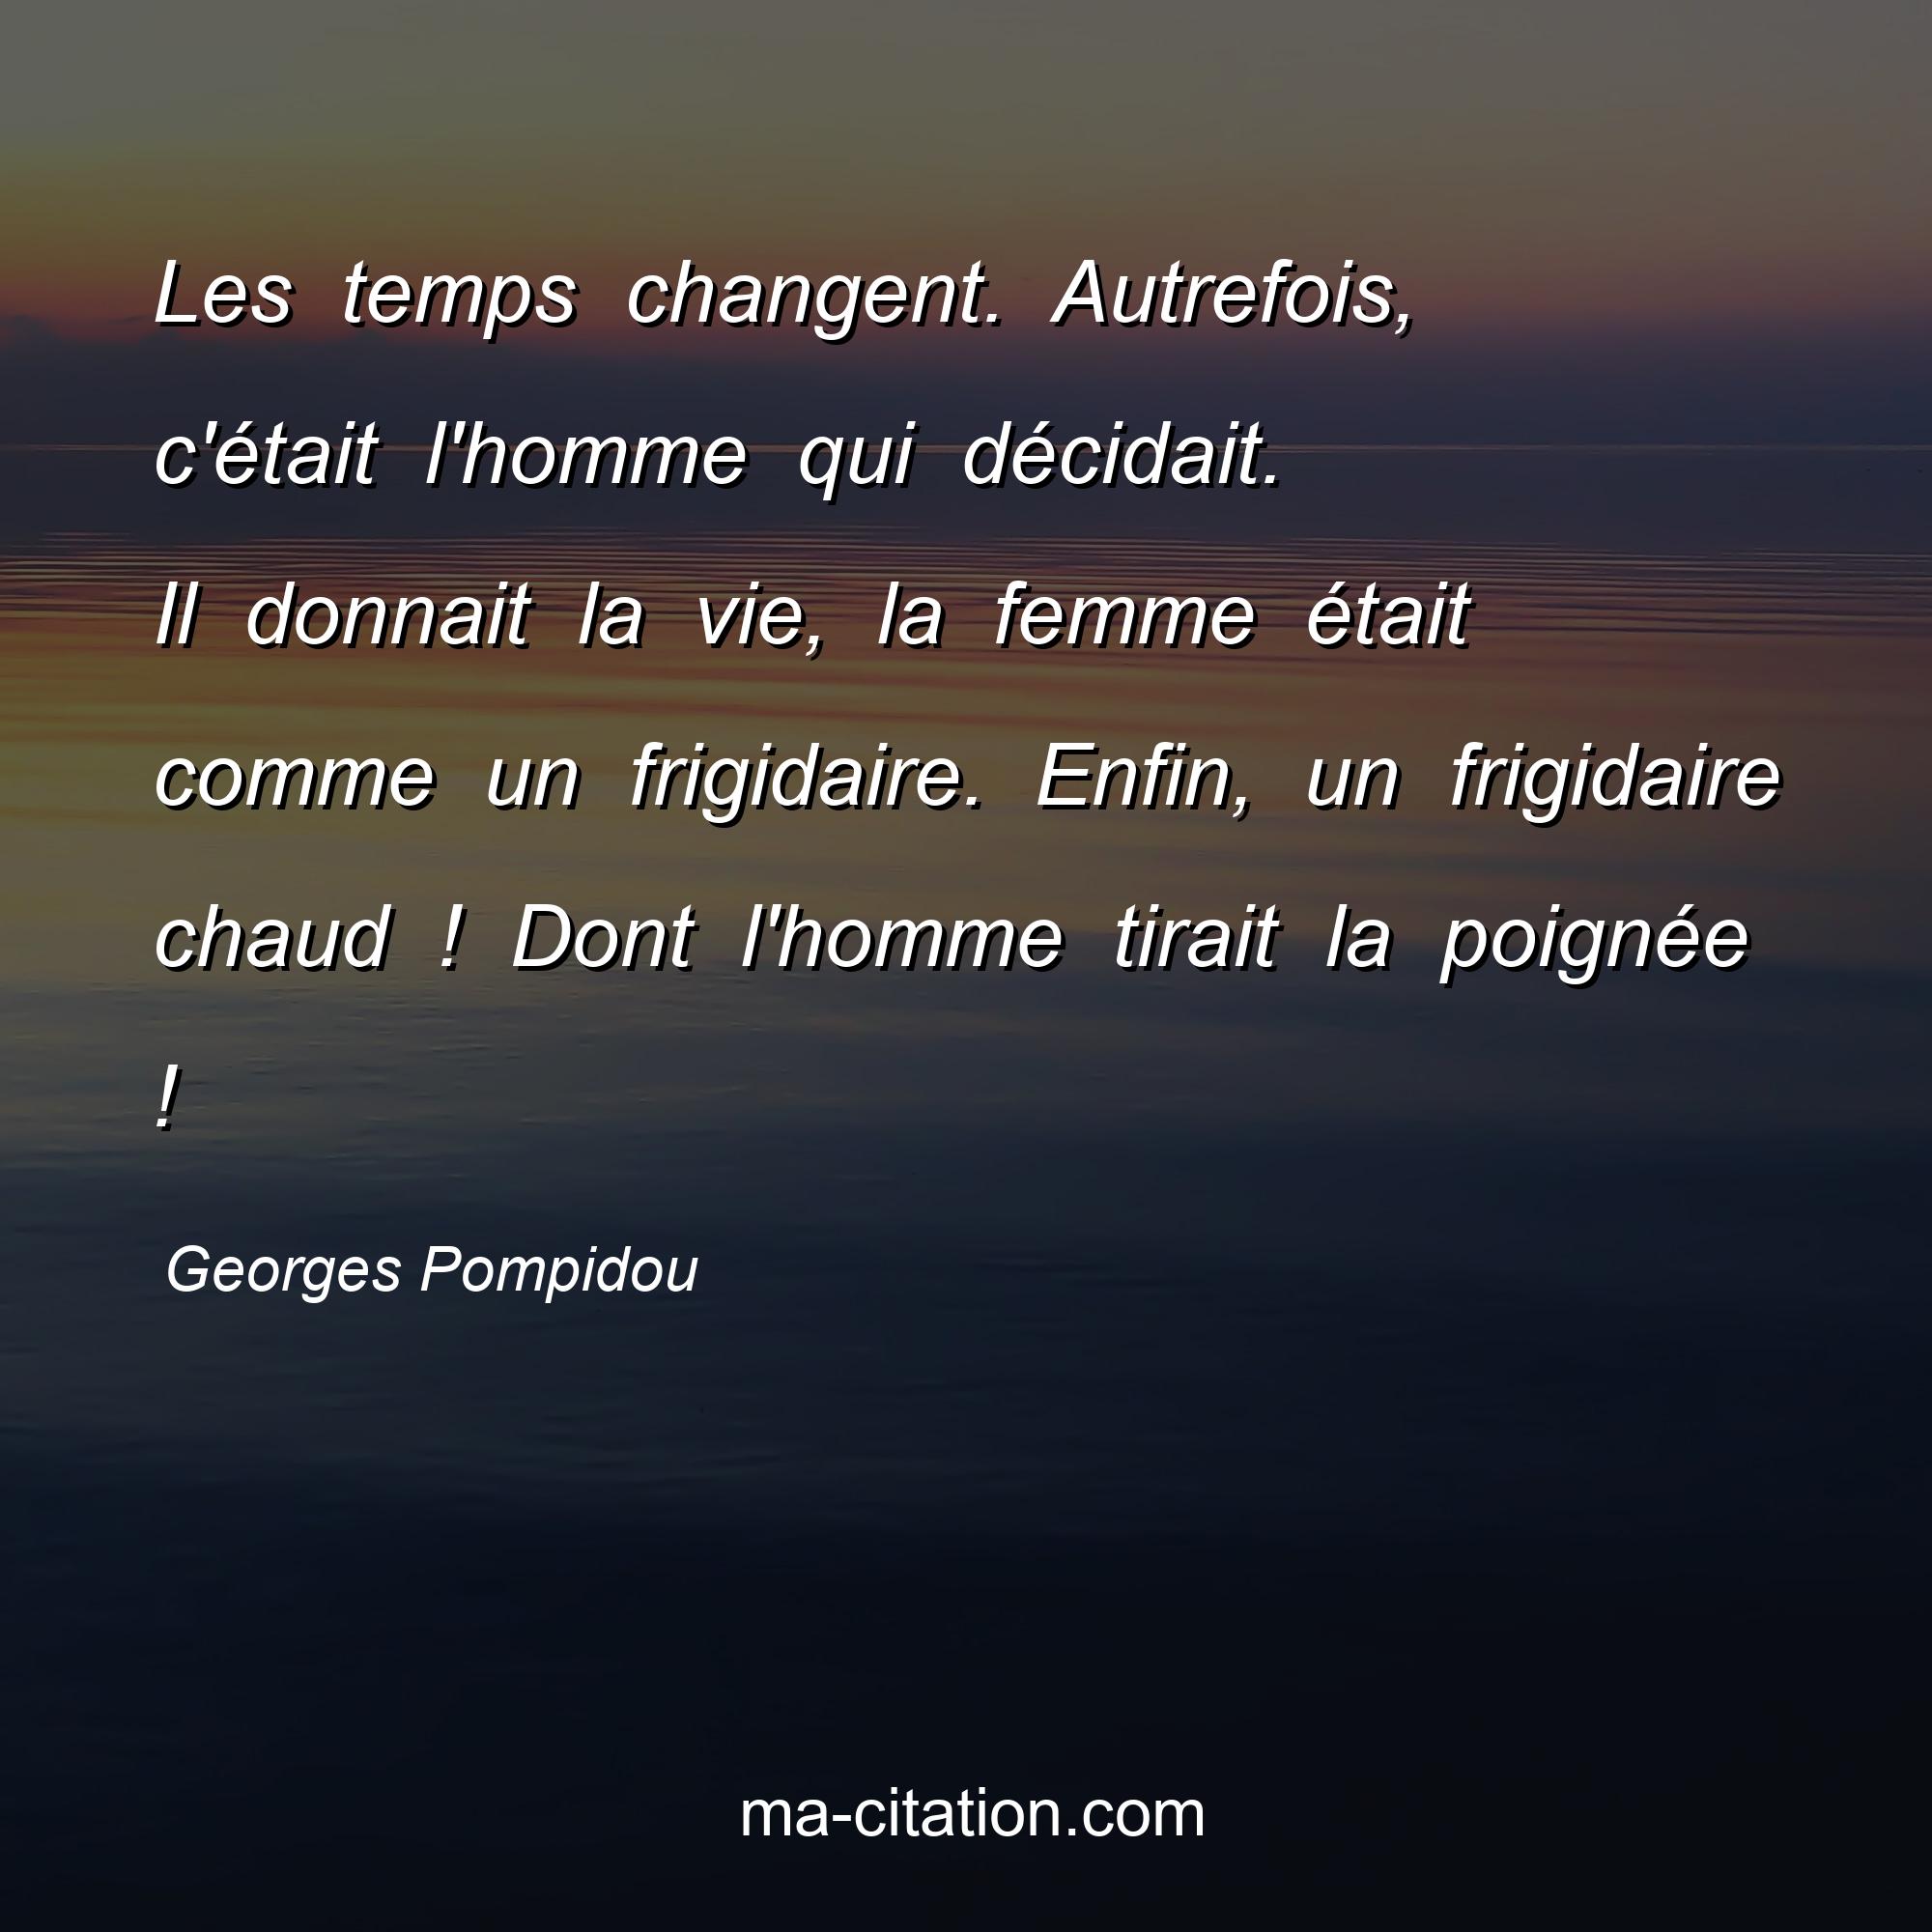 Georges Pompidou : Les temps changent. Autrefois, c'était l'homme qui décidait. Il donnait la vie, la femme était comme un frigidaire. Enfin, un frigidaire chaud ! Dont l'homme tirait la poignée !